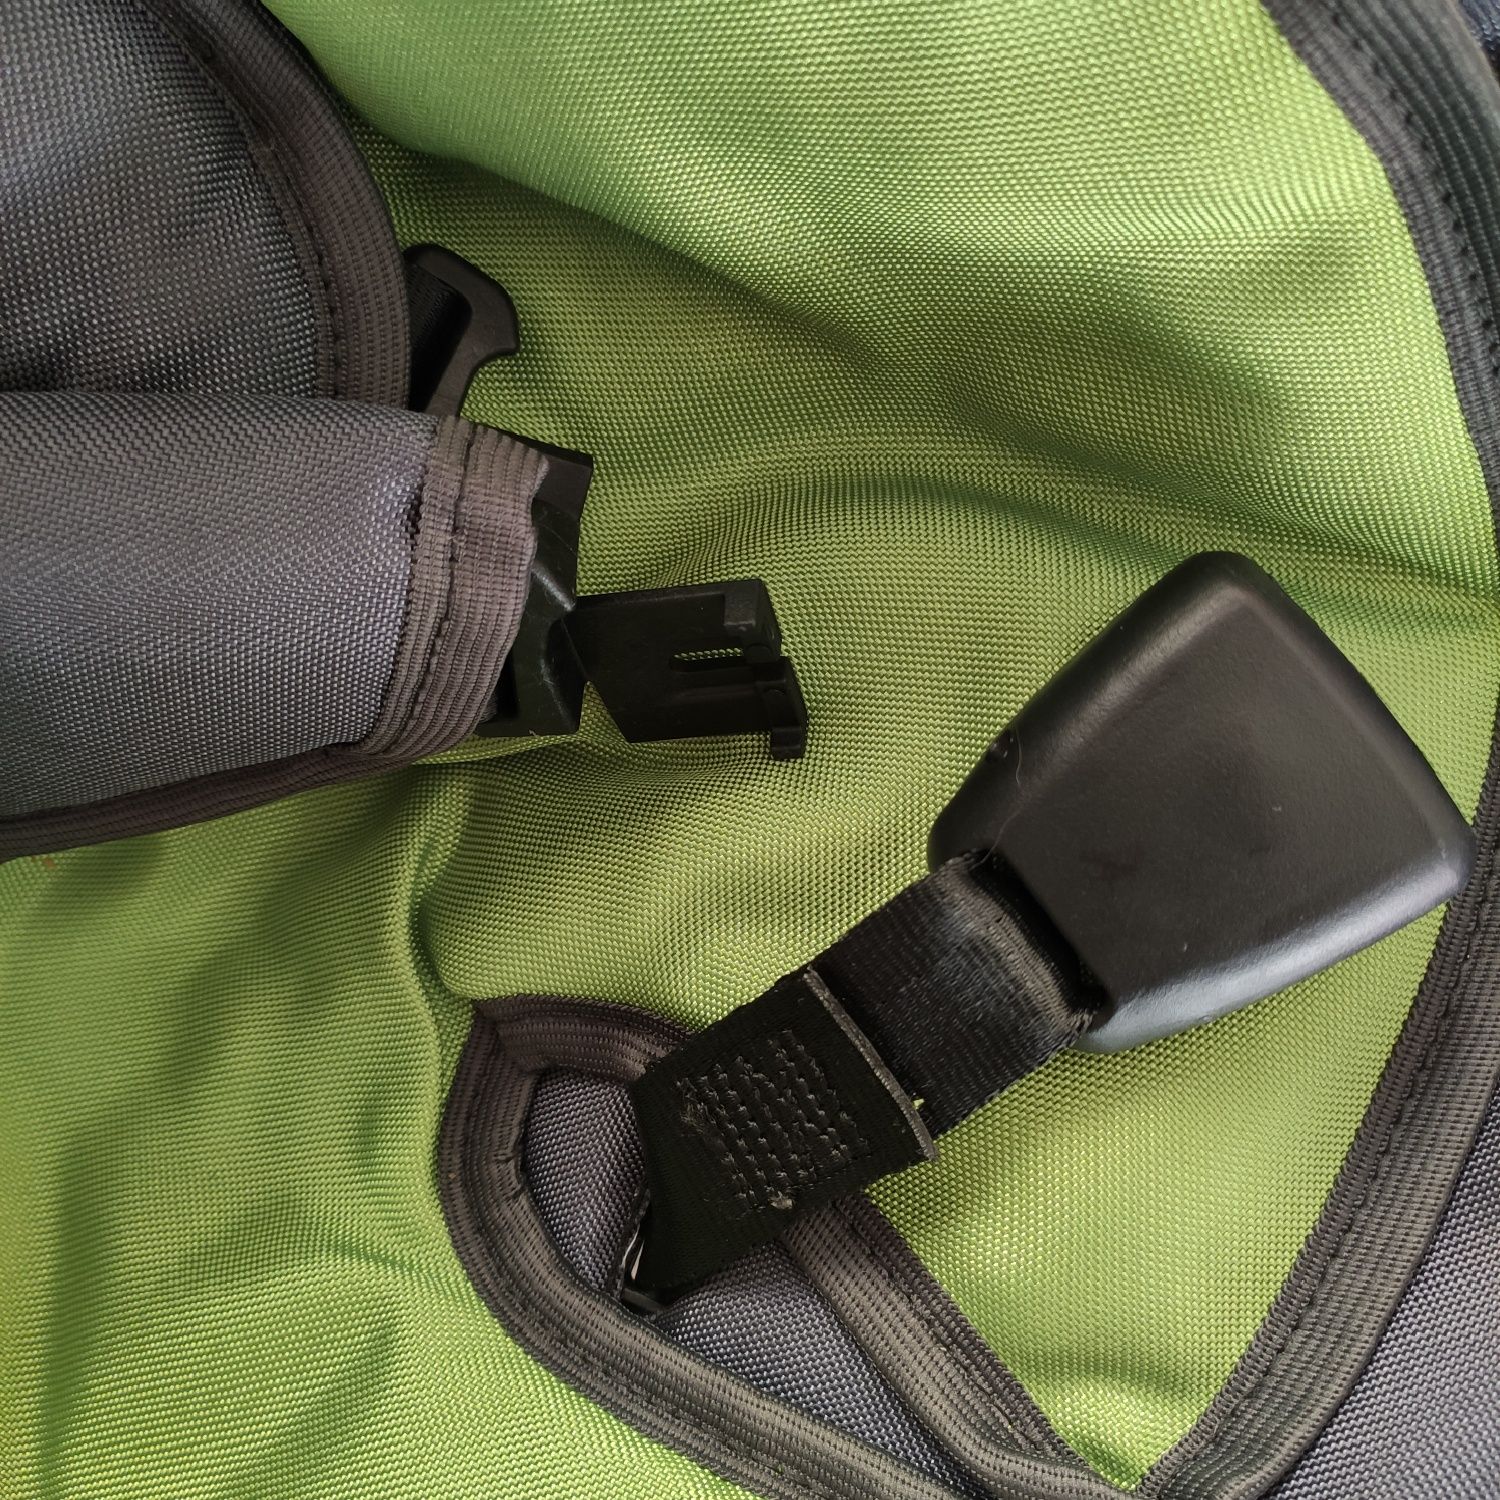 Fotelik Bujak nosidło do auta dla malucha 0-10 kg noworodek Karwala